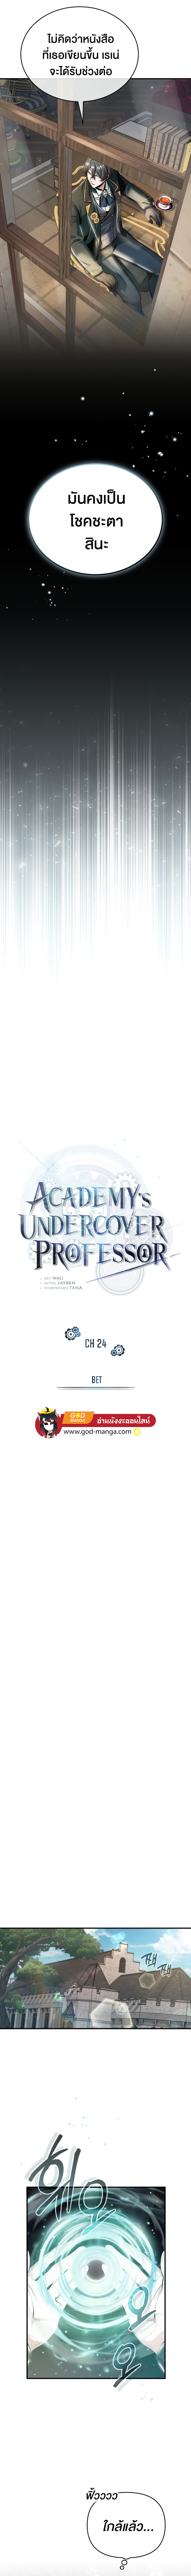 Academy’s Undercover Professor 24 03